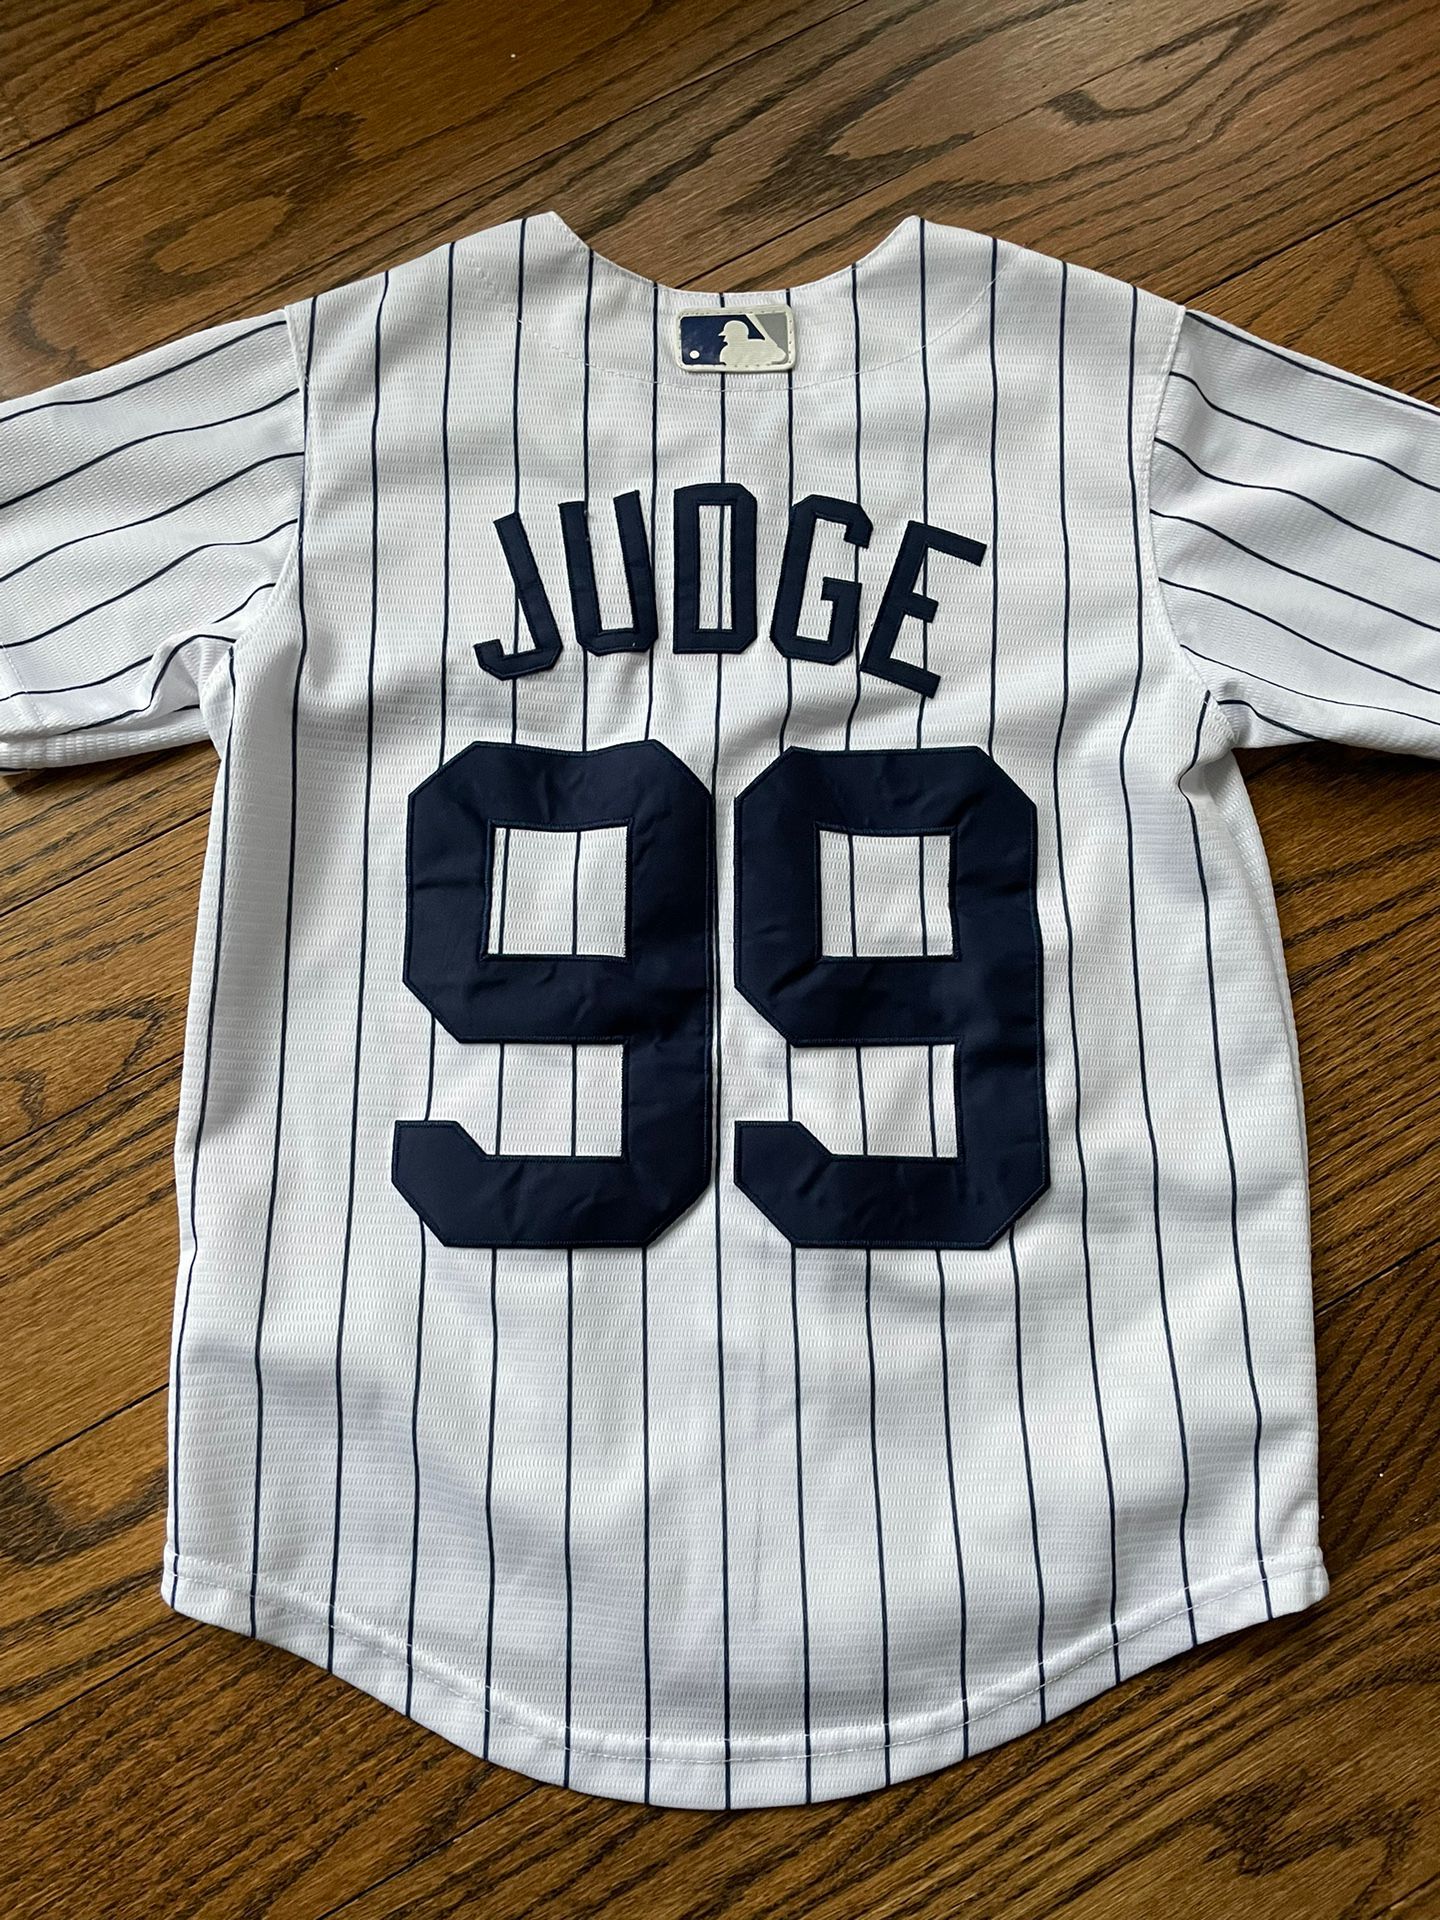 grey aaron judge jersey